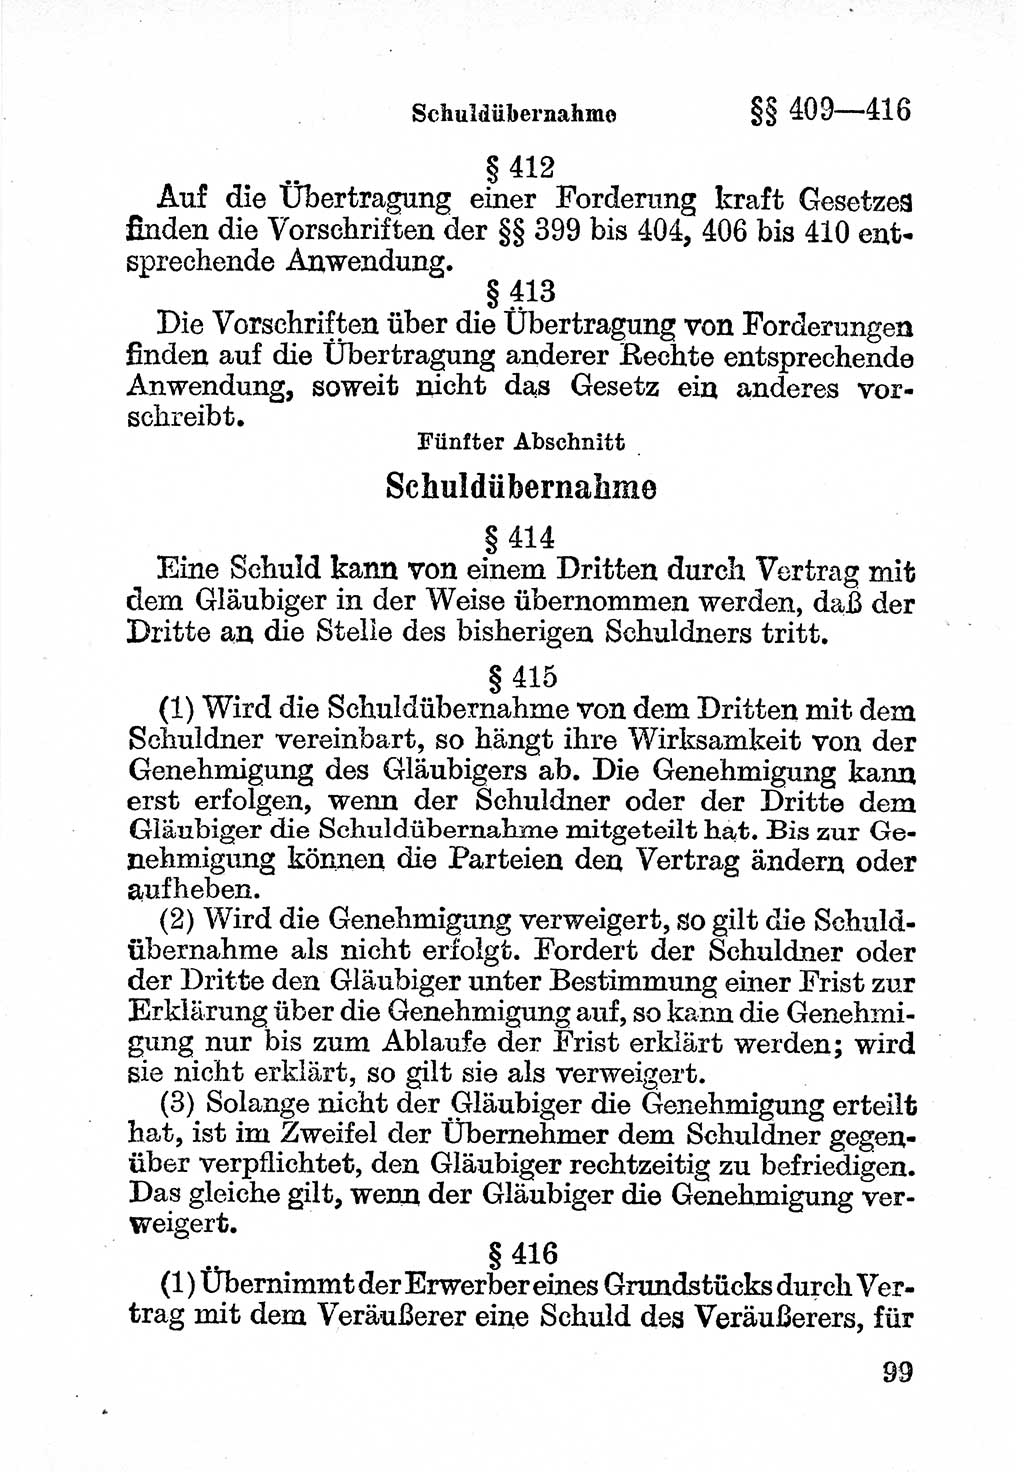 Bürgerliches Gesetzbuch (BGB) nebst wichtigen Nebengesetzen [Deutsche Demokratische Republik (DDR)] 1956, Seite 99 (BGB Nebenges. DDR 1956, S. 99)